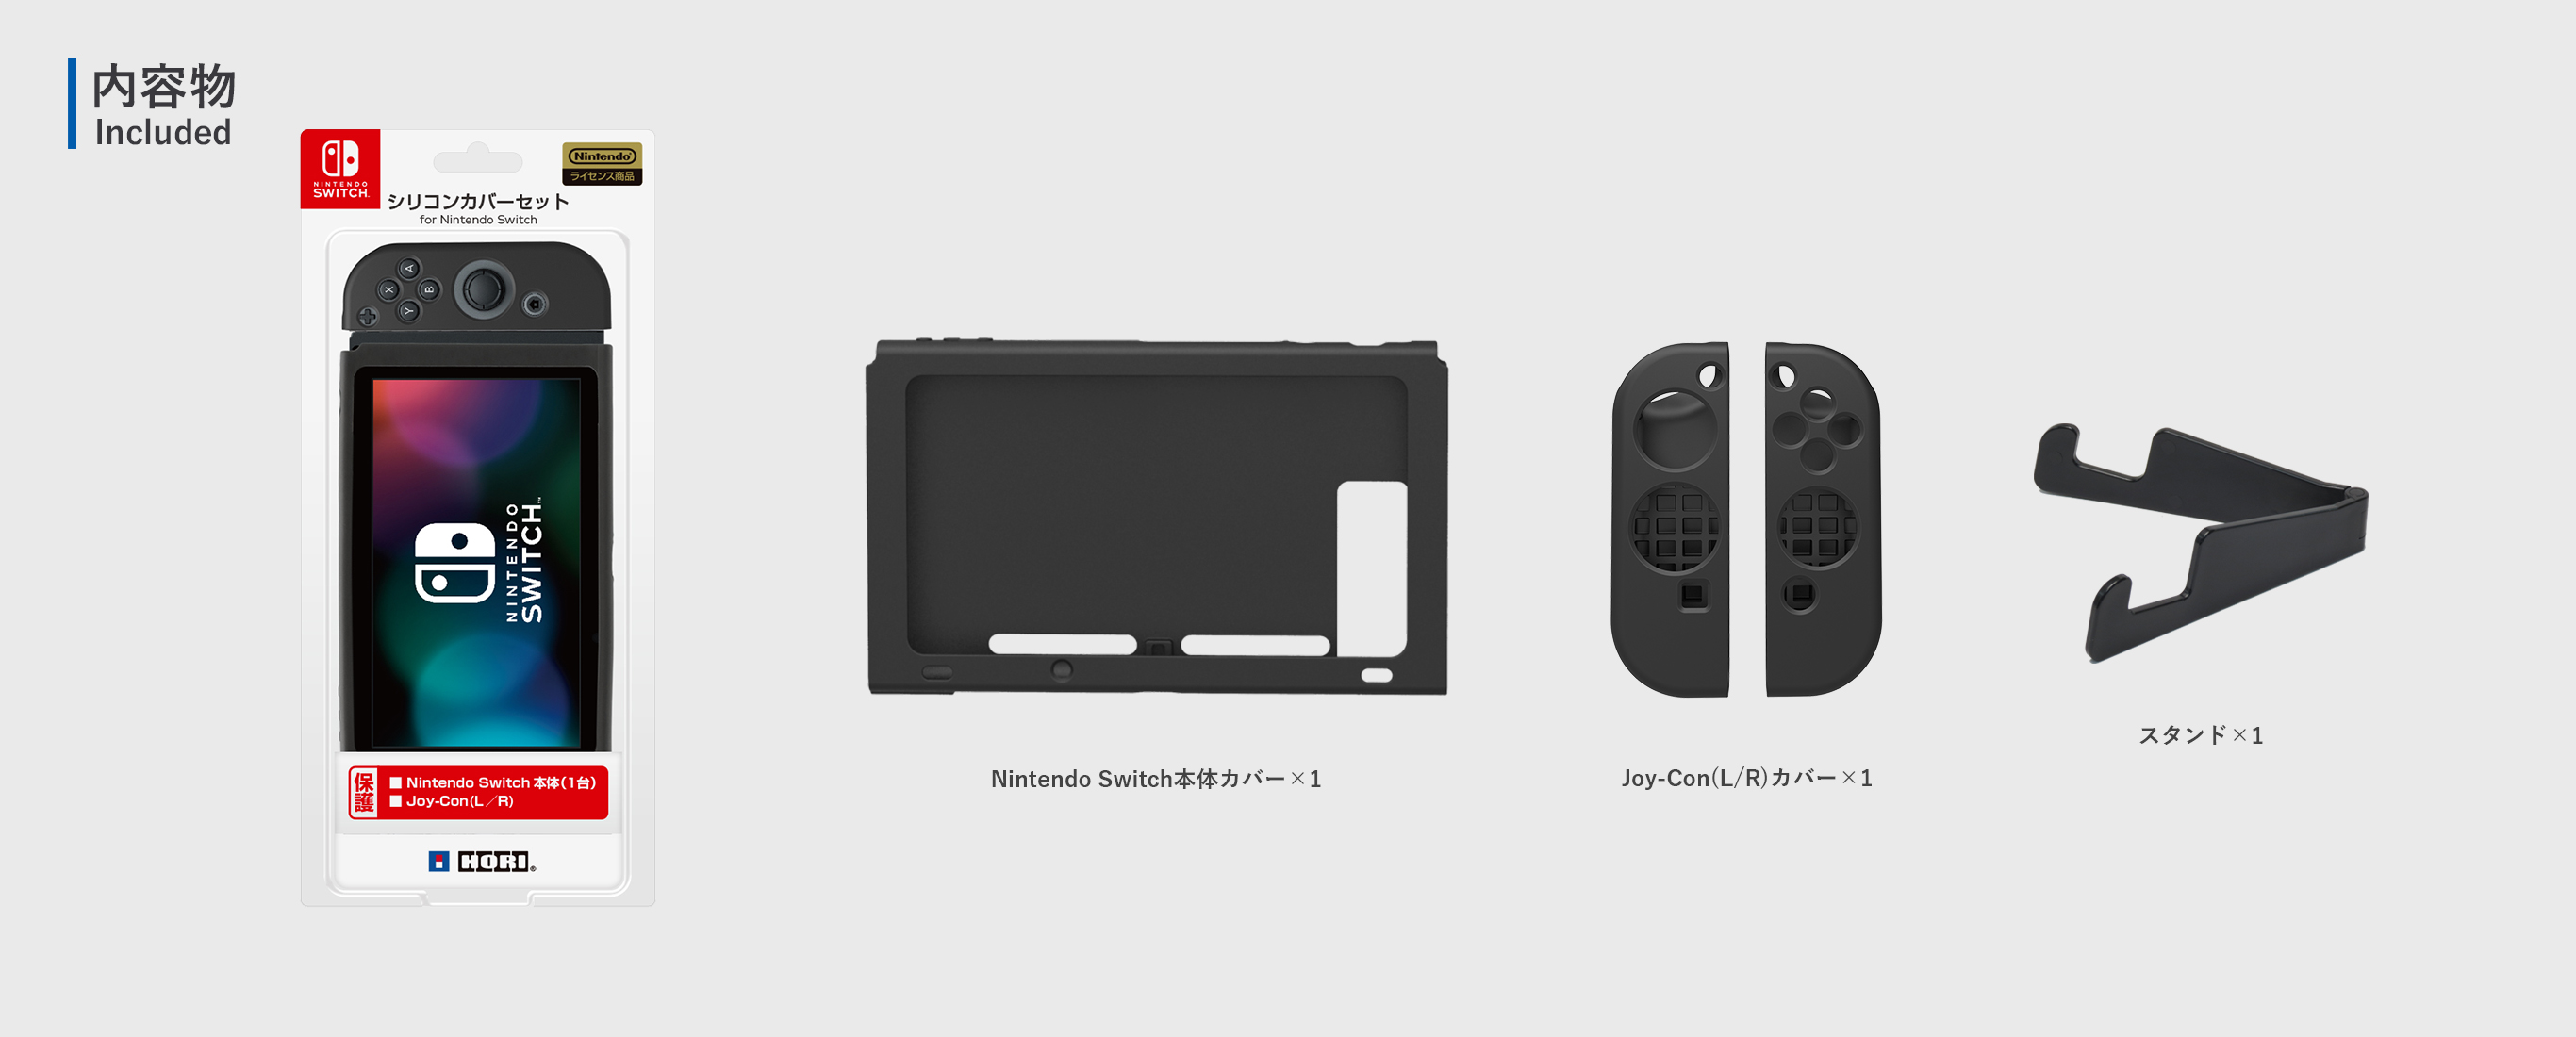 株式会社 Hori シリコンカバーセット For Nintendo Switch